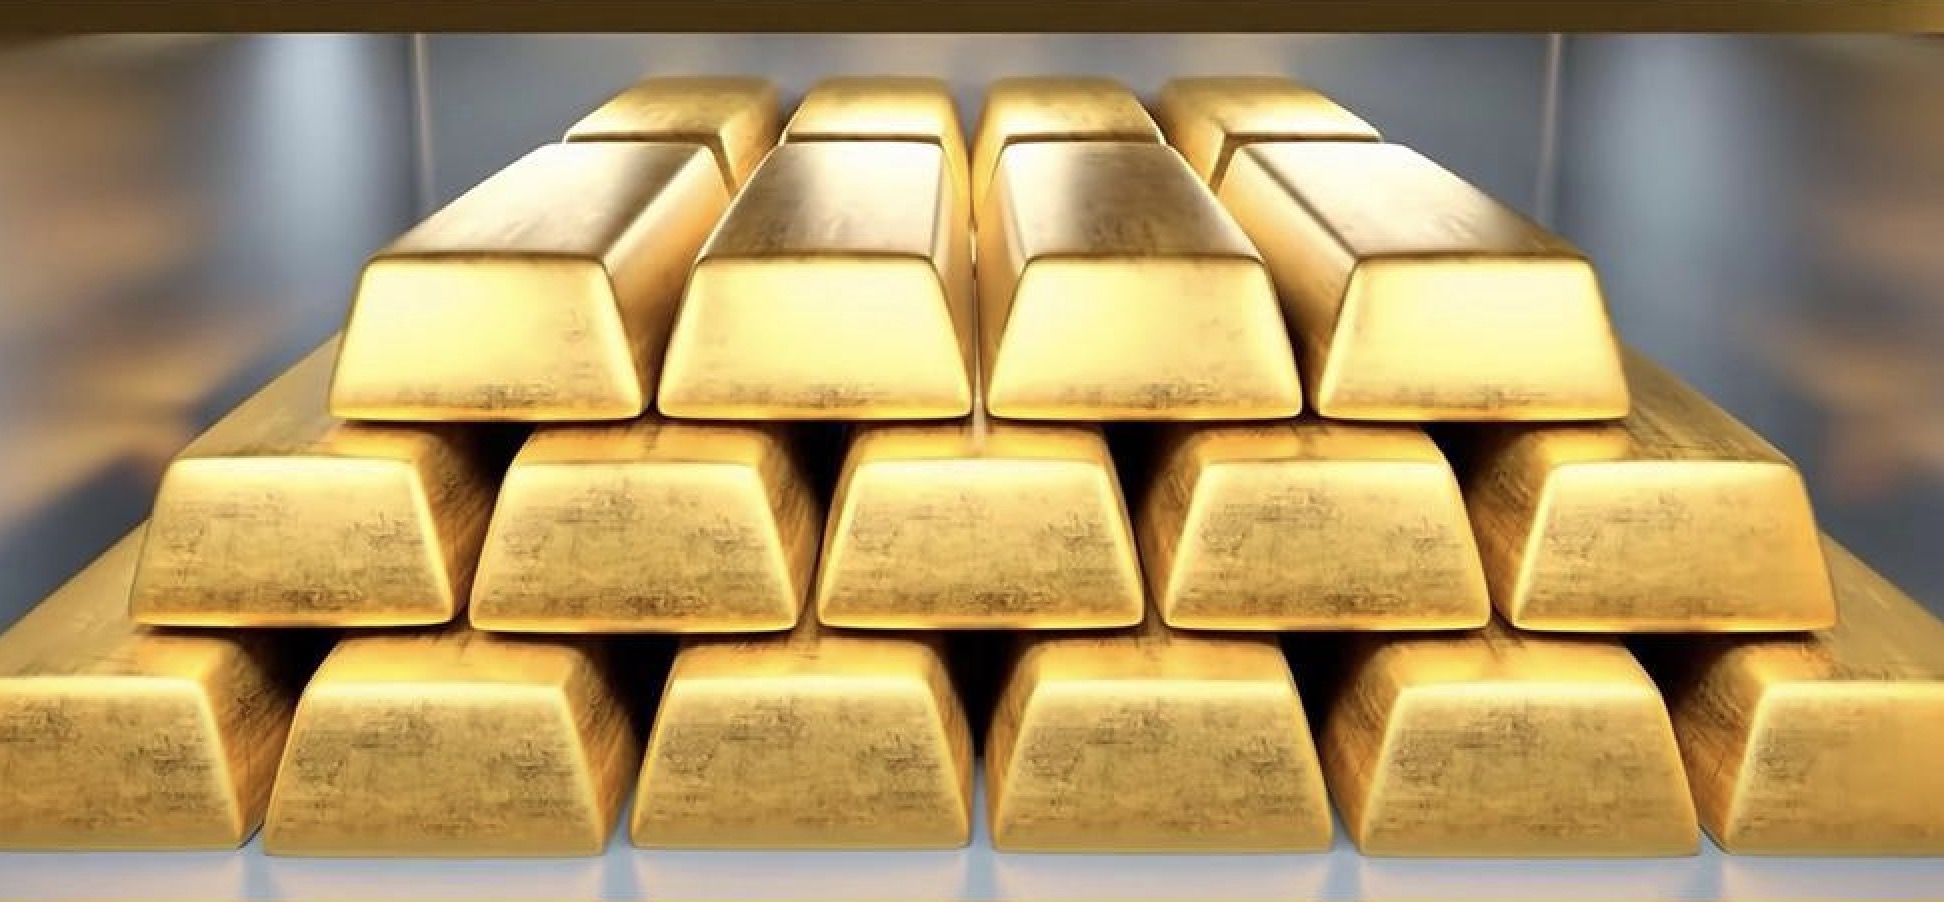 คำเตือนการซื้อขายทองคำ: บูลส์ "สู้กลับ" ราคาทองคำดีดตัวขึ้นเหนือ $30 ข้อมูล PCE ของสหรัฐฯ ได้รับผลกระทบอย่างหนัก